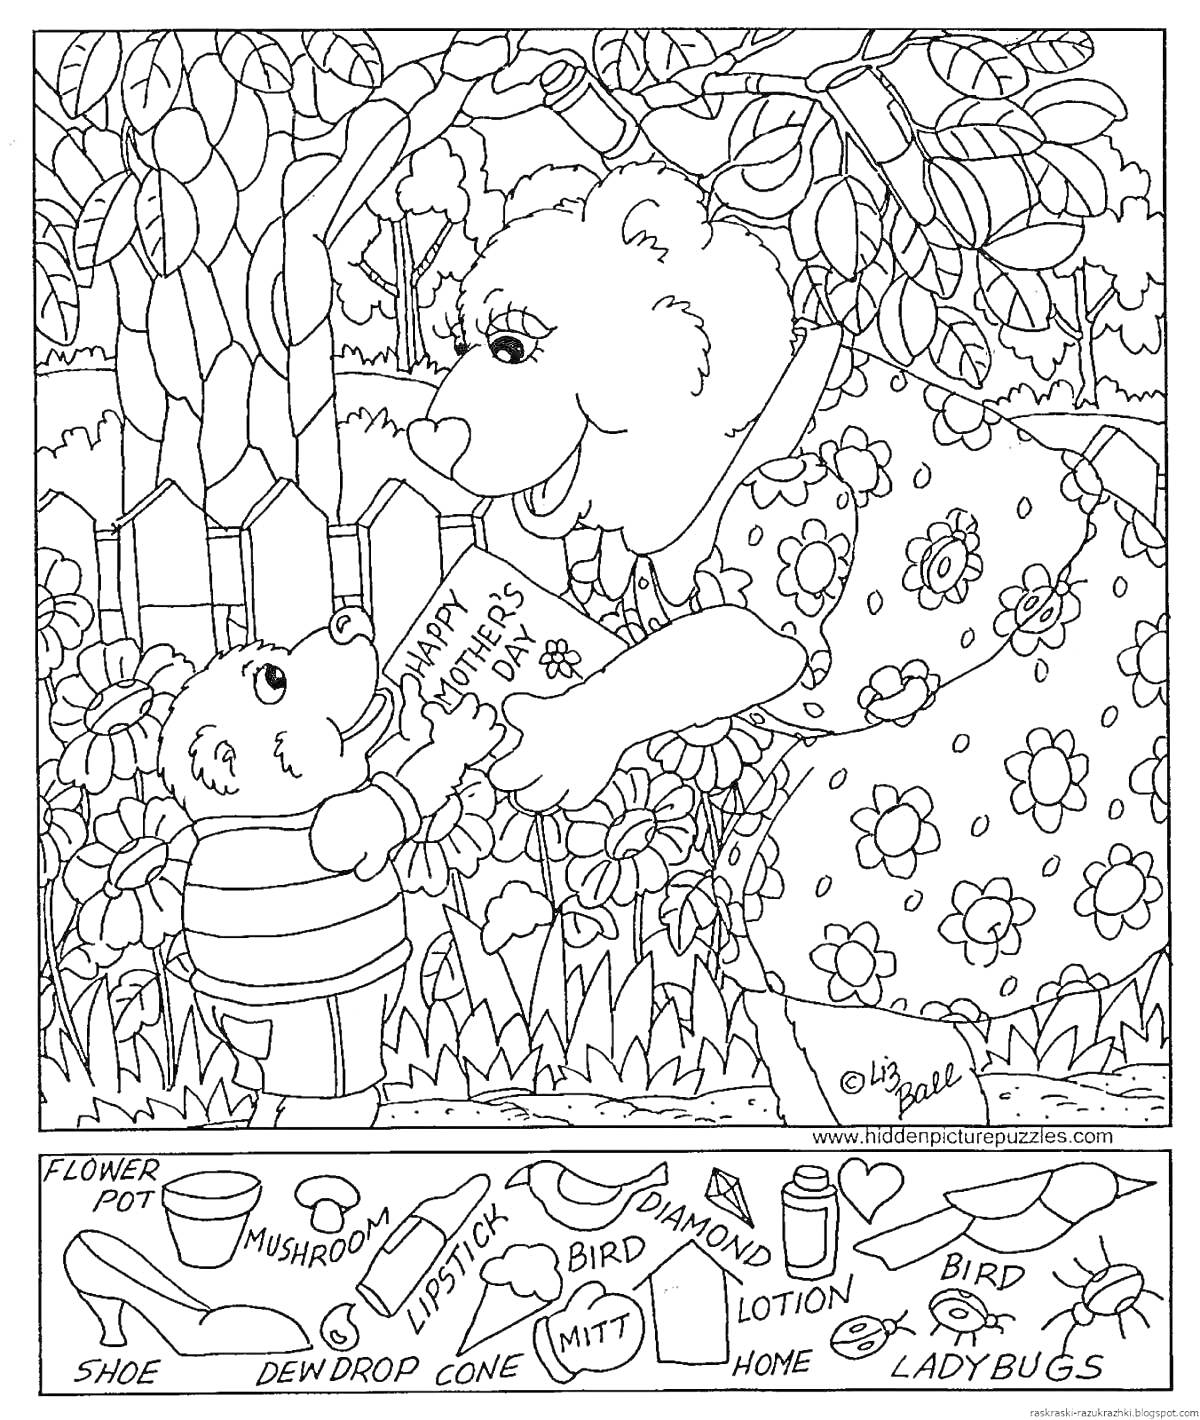 Раскраска с медведями и элементами, которые нужно найти: цветочный горшок, туфля, грибы, губная помада, капля росы, конус, прихватка, даминон, лосьон, улей, птица, божьи коровки